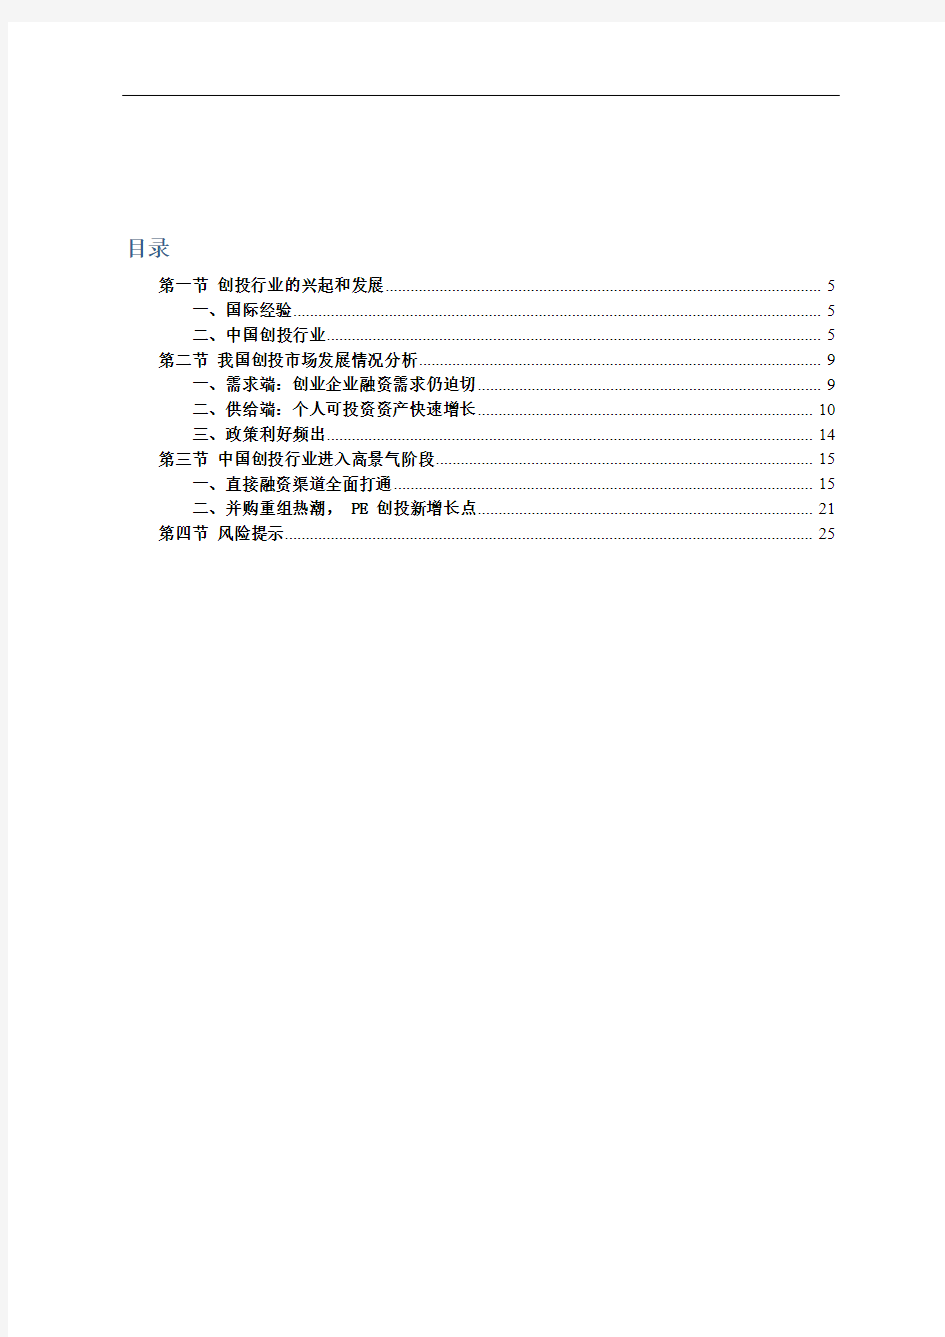 2017年中国创投行业专题调研分析报告